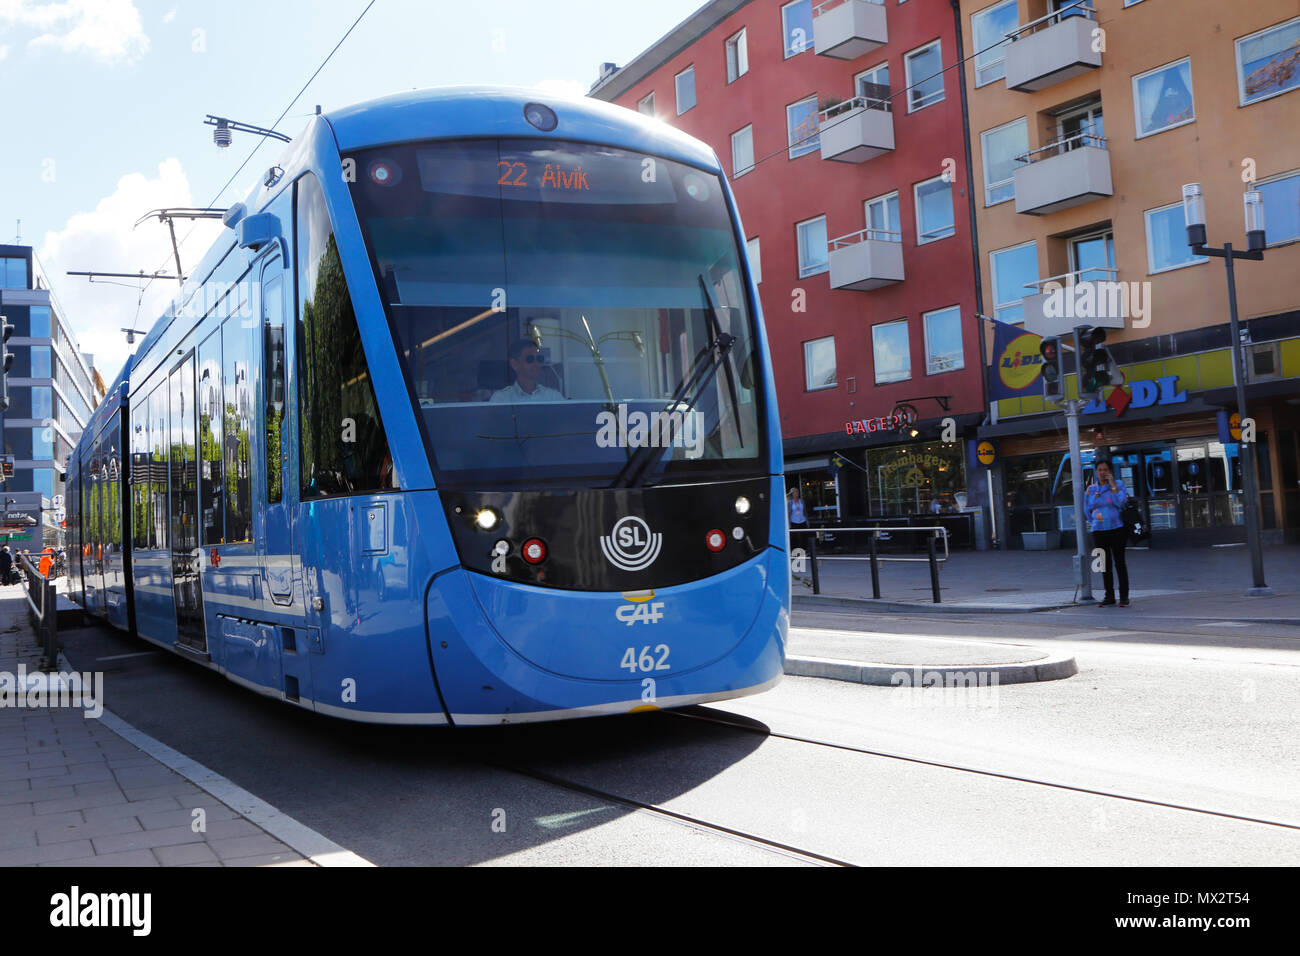 Sundbyberg, Schweden, 23. August 2016: Straßenbahn Klasse A 35 im Service auf Zeile 22 für SL in Sundbyberg Stadtzentrum an der Straße landsvagen. Stockfoto